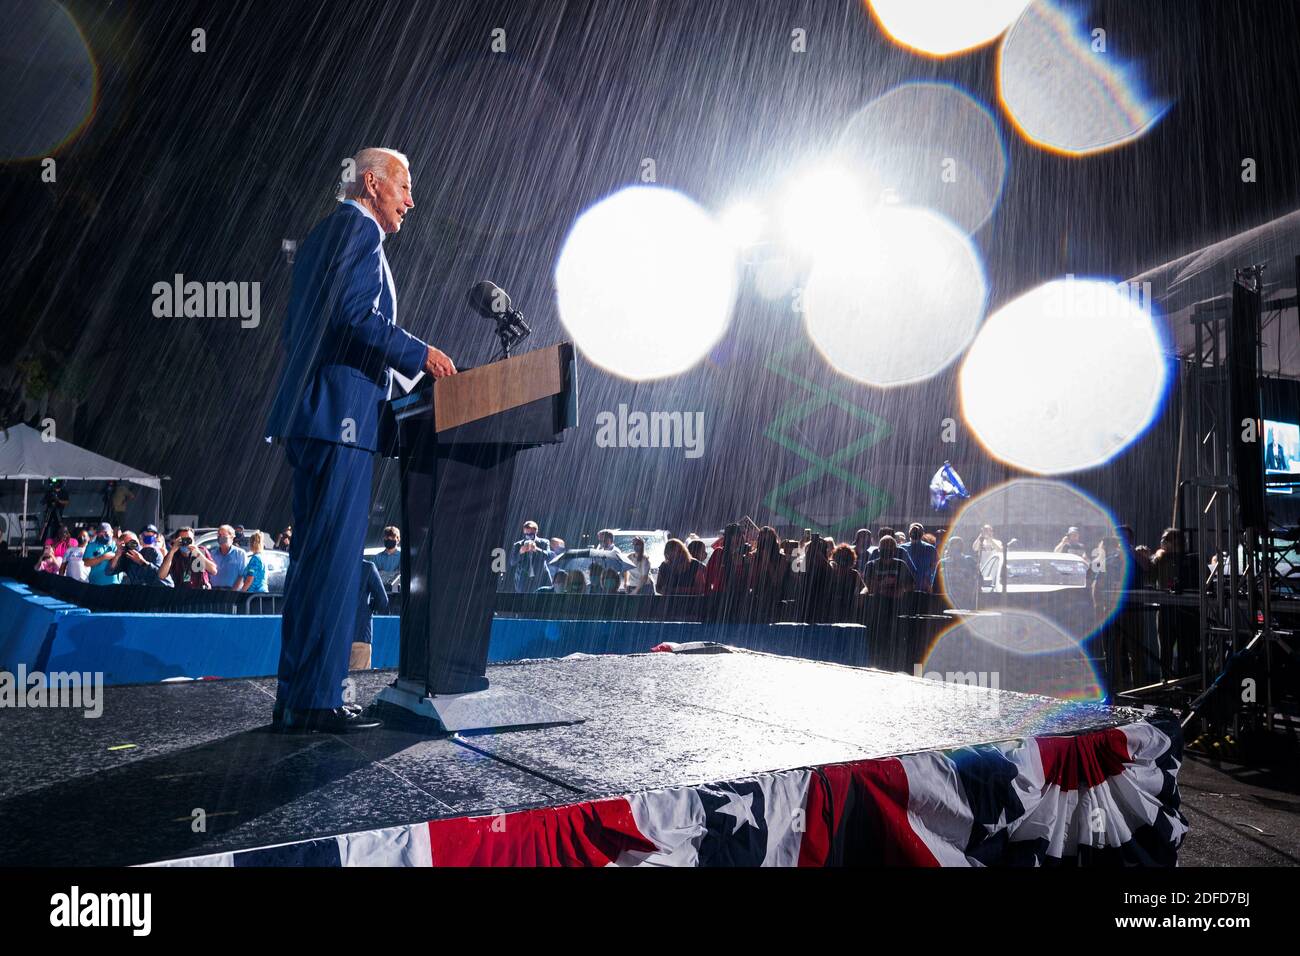 TAMPA, Floride, États-Unis - 29 octobre 2020 - Joe Biden, président de la démocratie américaine, à l'occasion d'un rassemblement au champ de foire de l'État de Floride - Tampa, Floride - 29 octobre 2020 - Banque D'Images